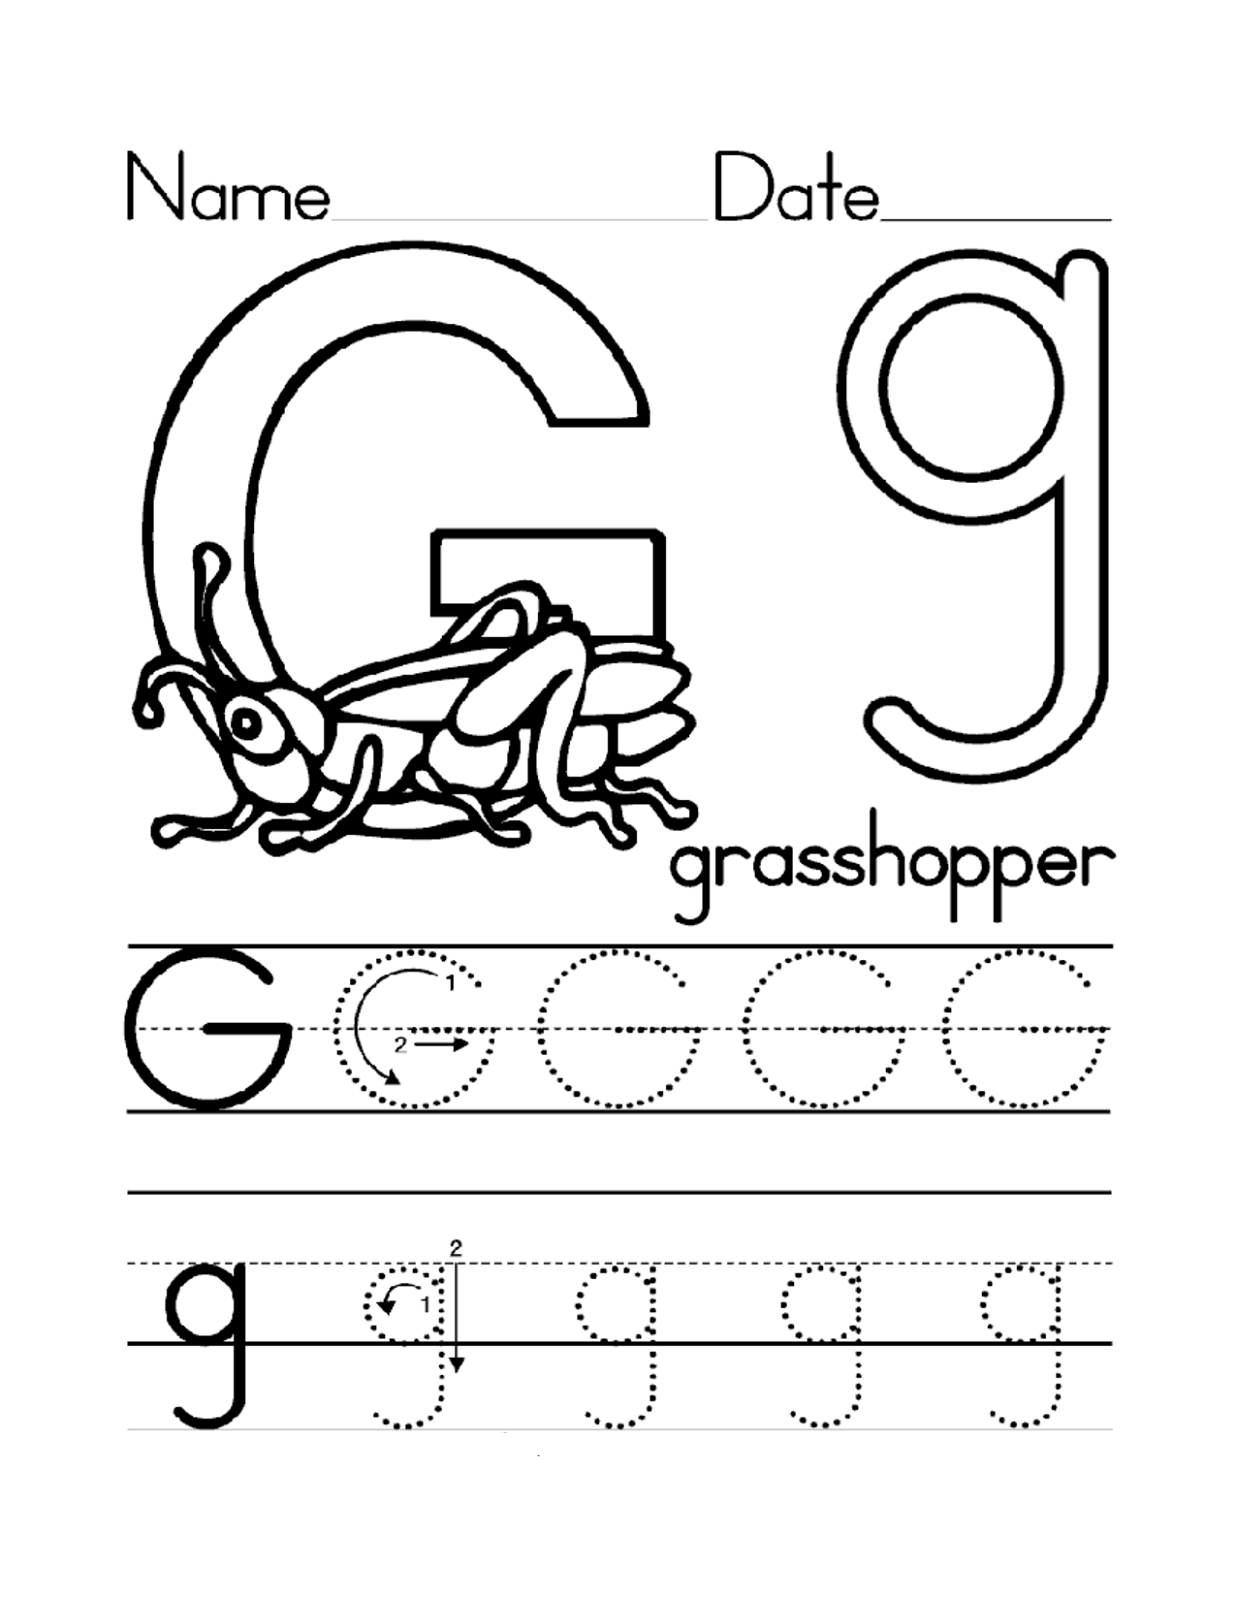 trace letter G grasshopper